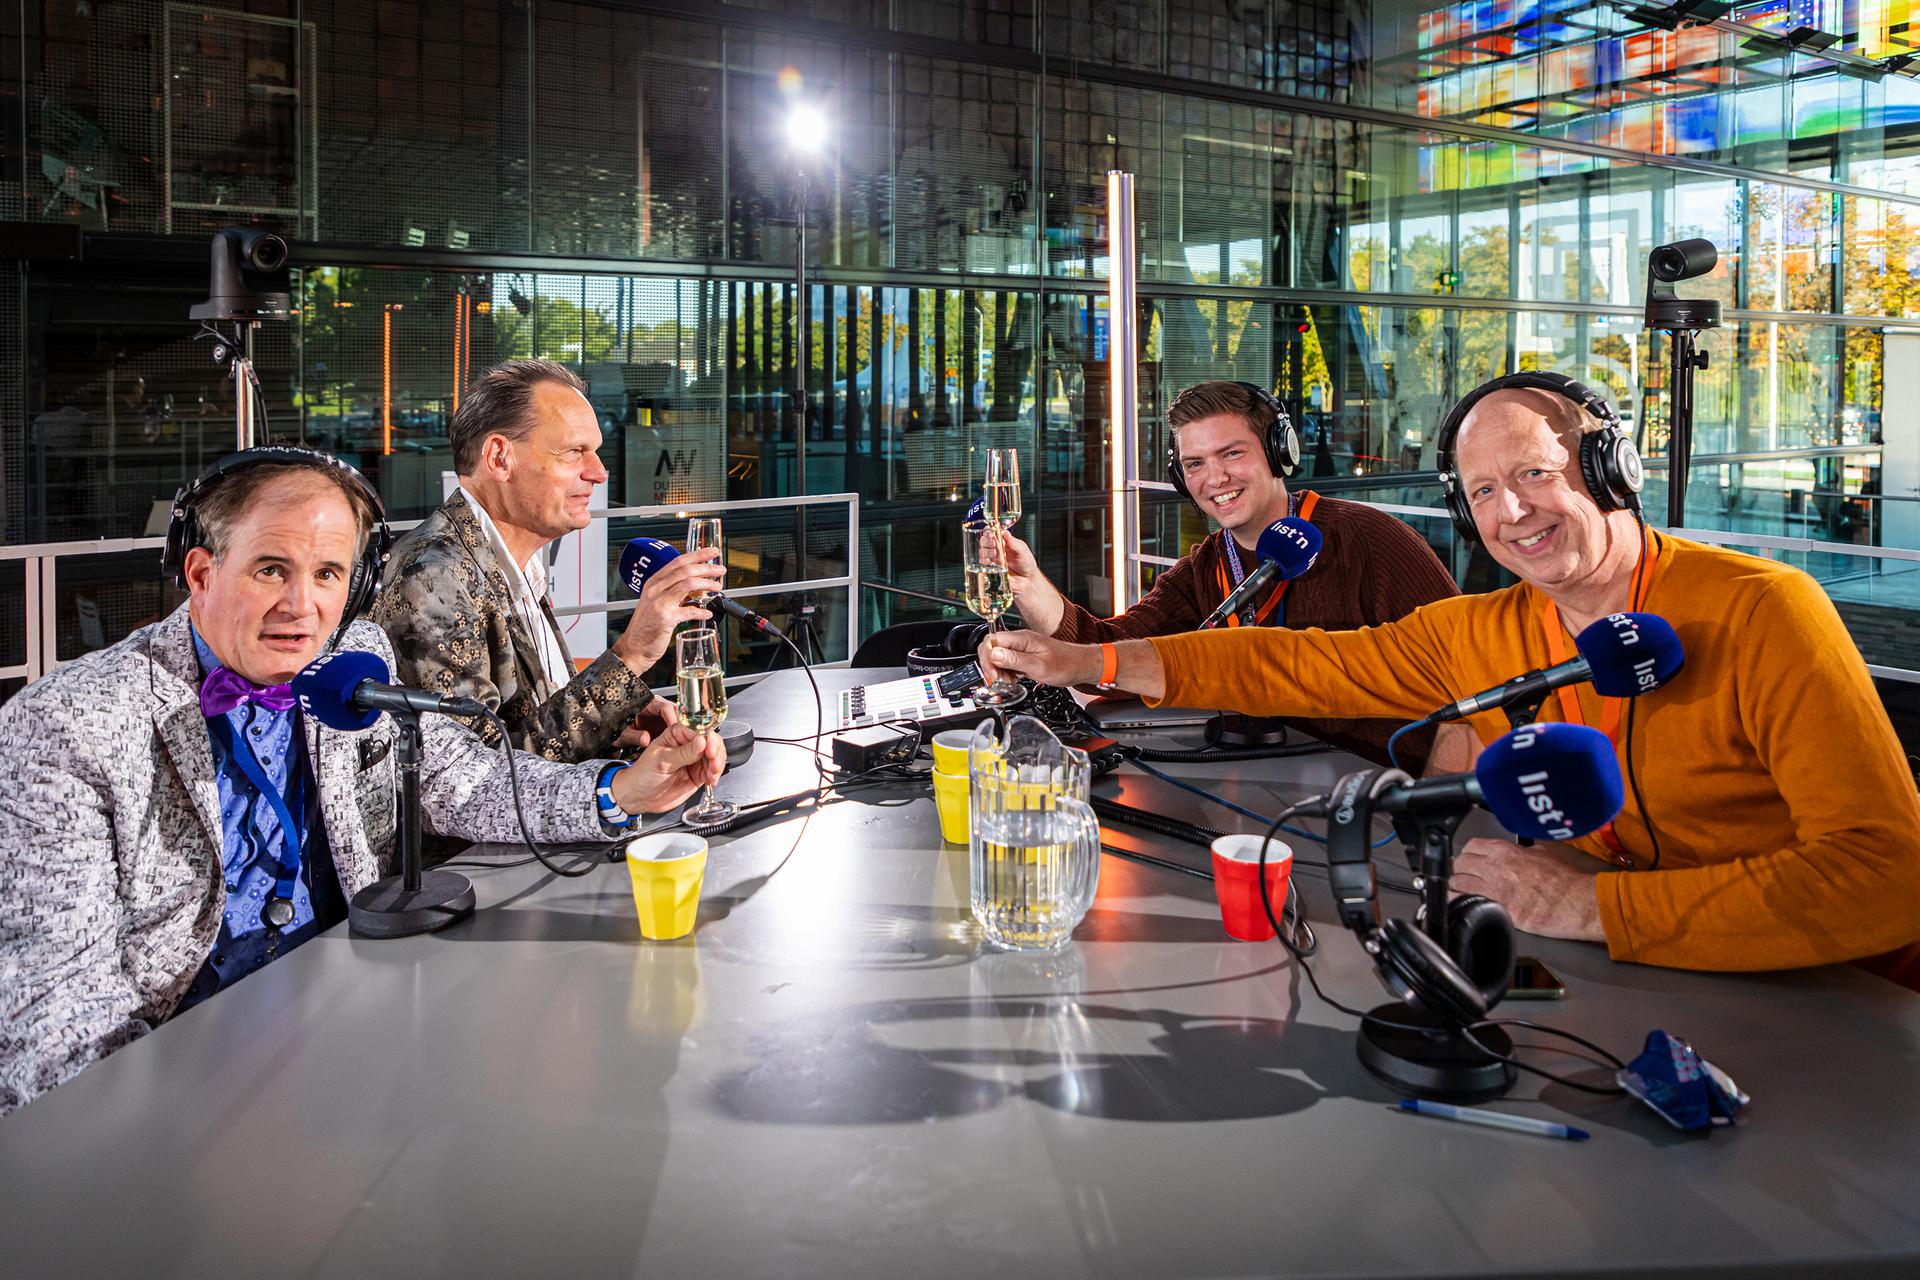 Nieuw podcastrecord van 153 uur door Dutch Media Week